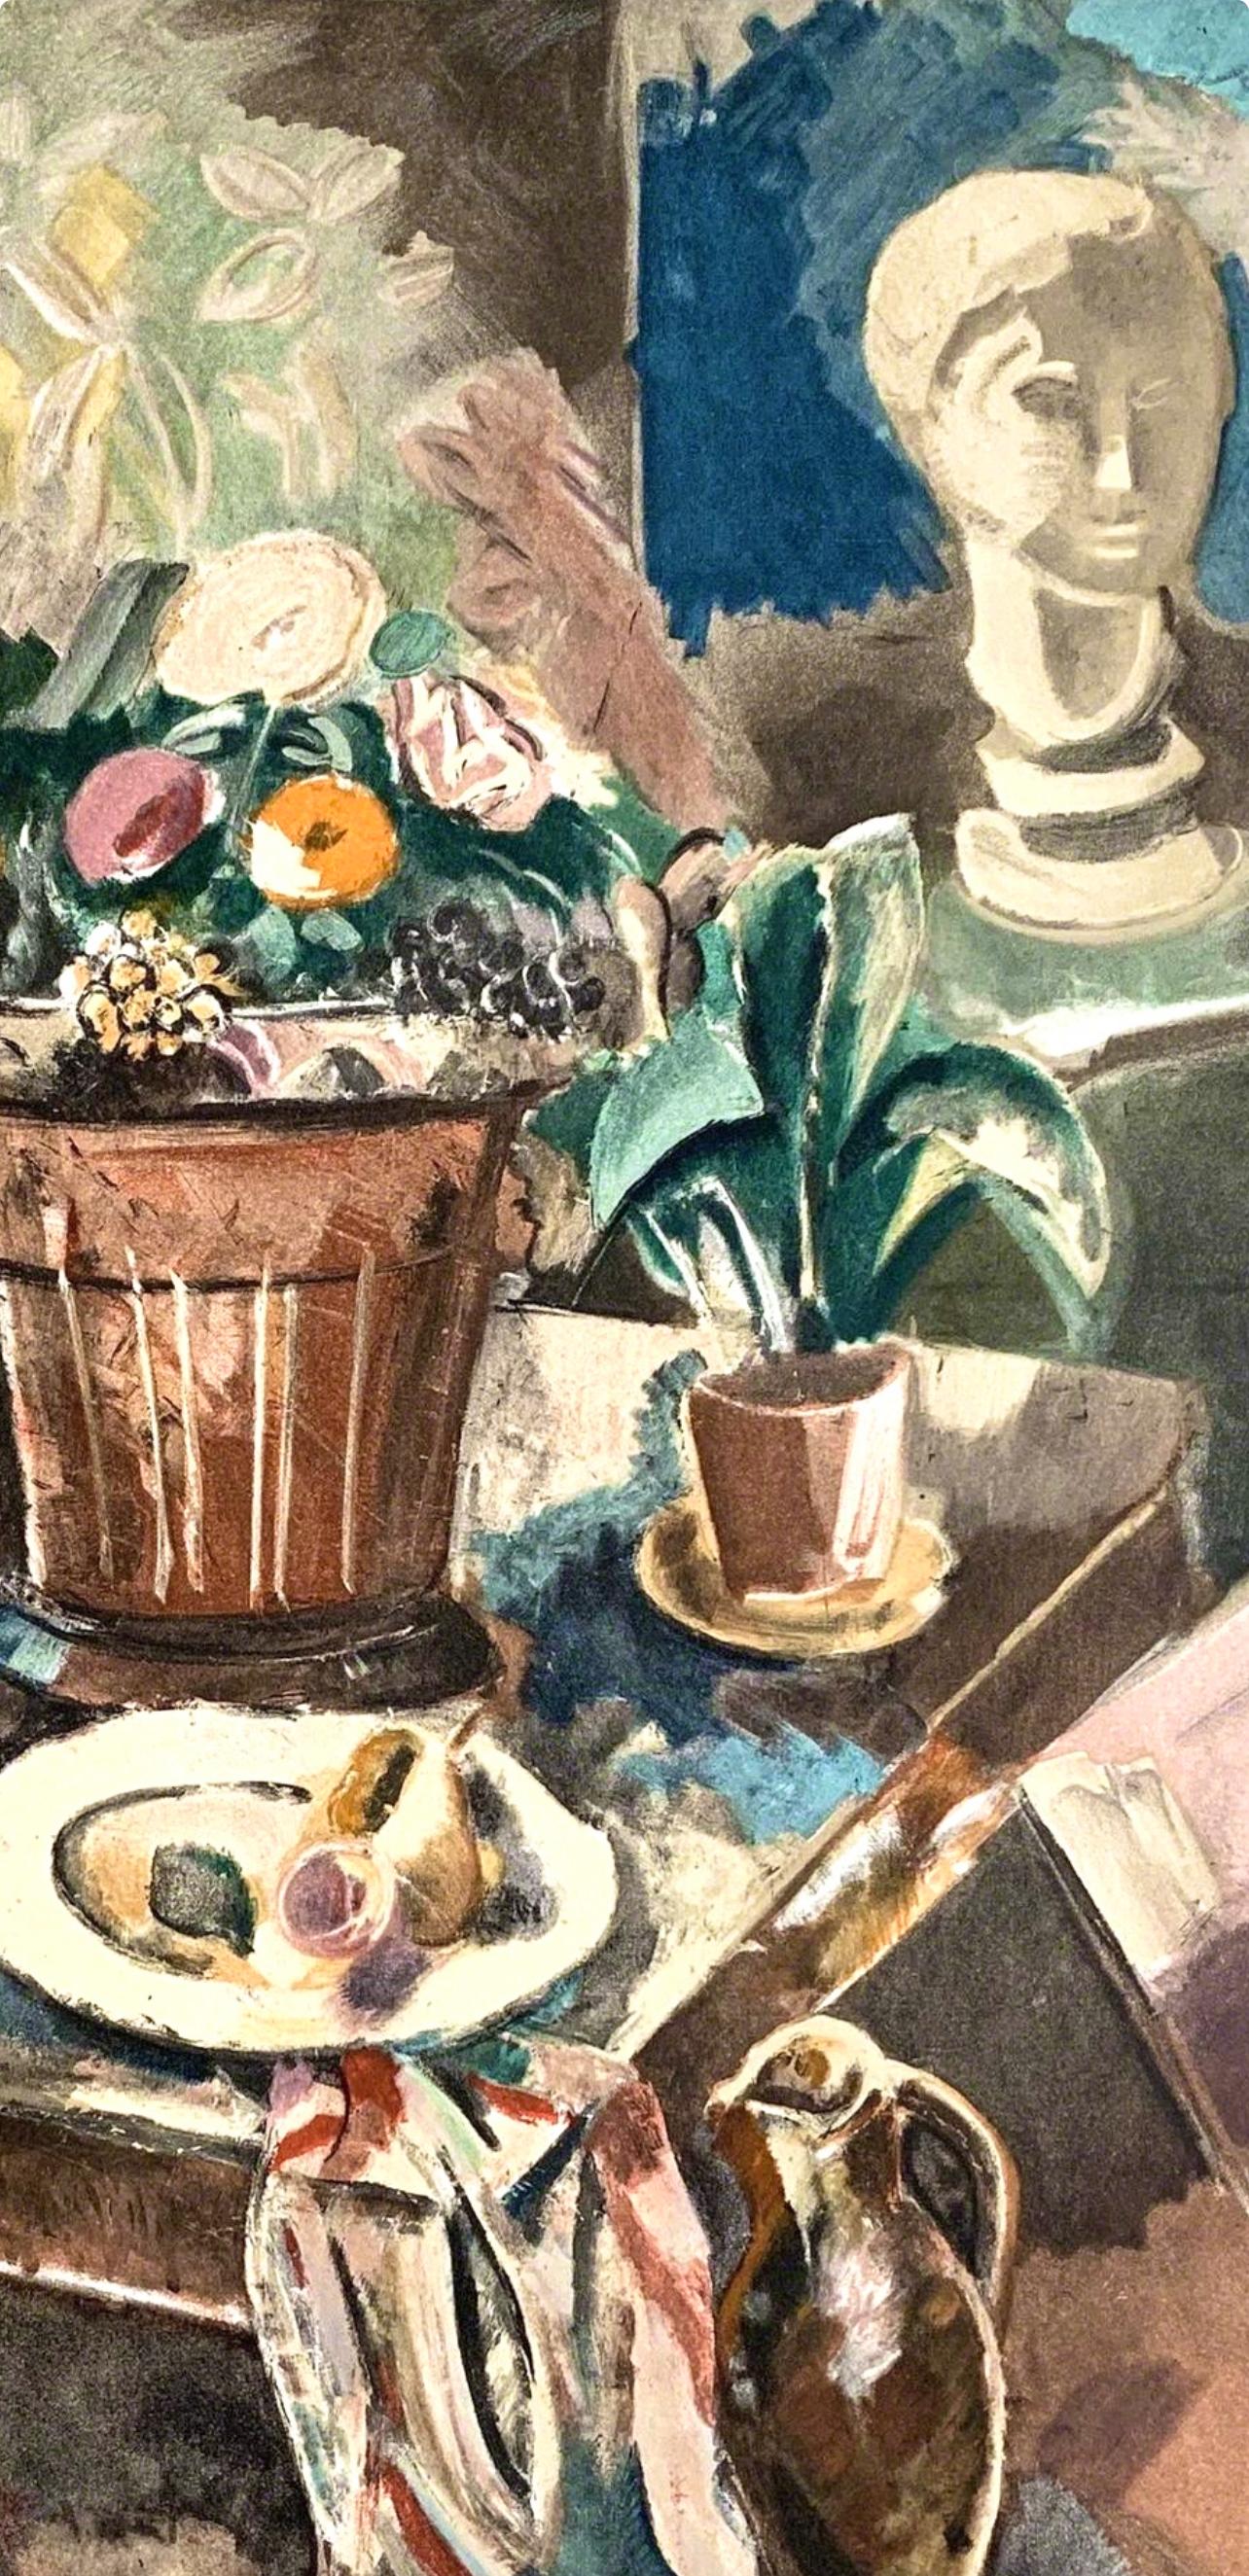 Dufresne, Nature morte au pot de fleurs, Dufresne, Collection P. Lévy (after) - Modern Print by Charles Dufresne